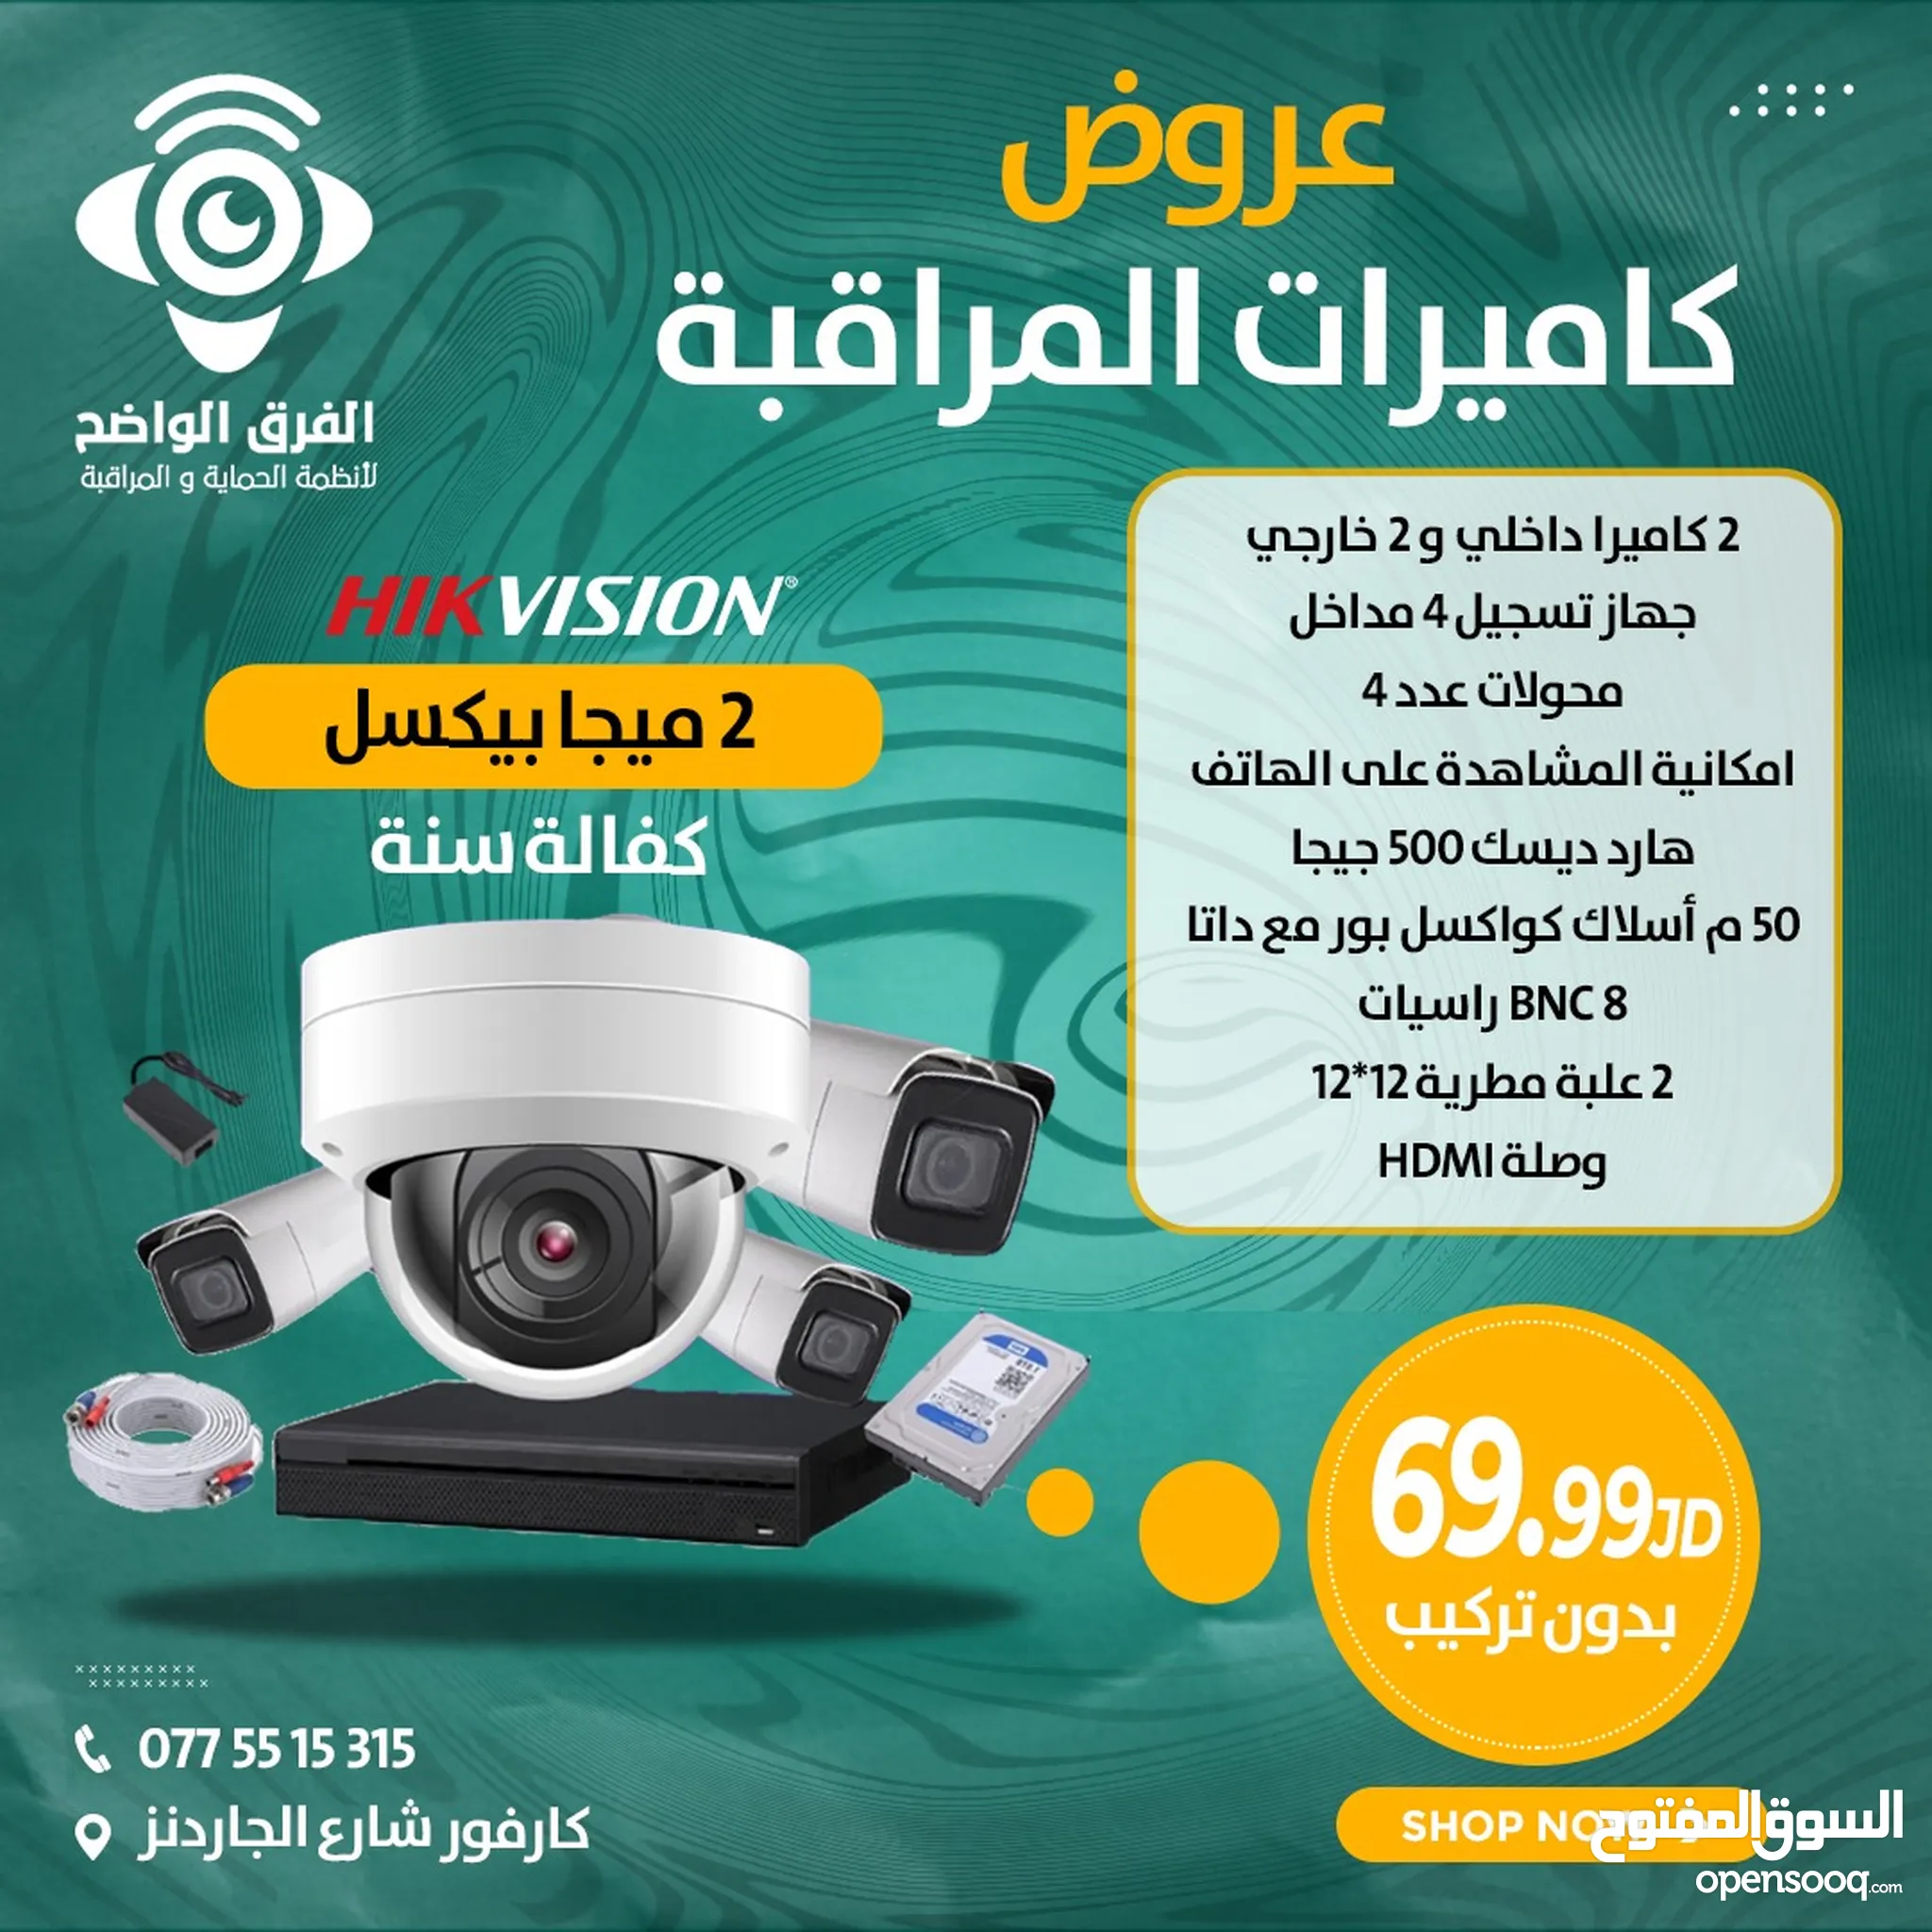 كاميرات مراقبة للبيع في الأردن : كاميرات حرارية : ليلية : افضل الاسعار |  السوق المفتوح